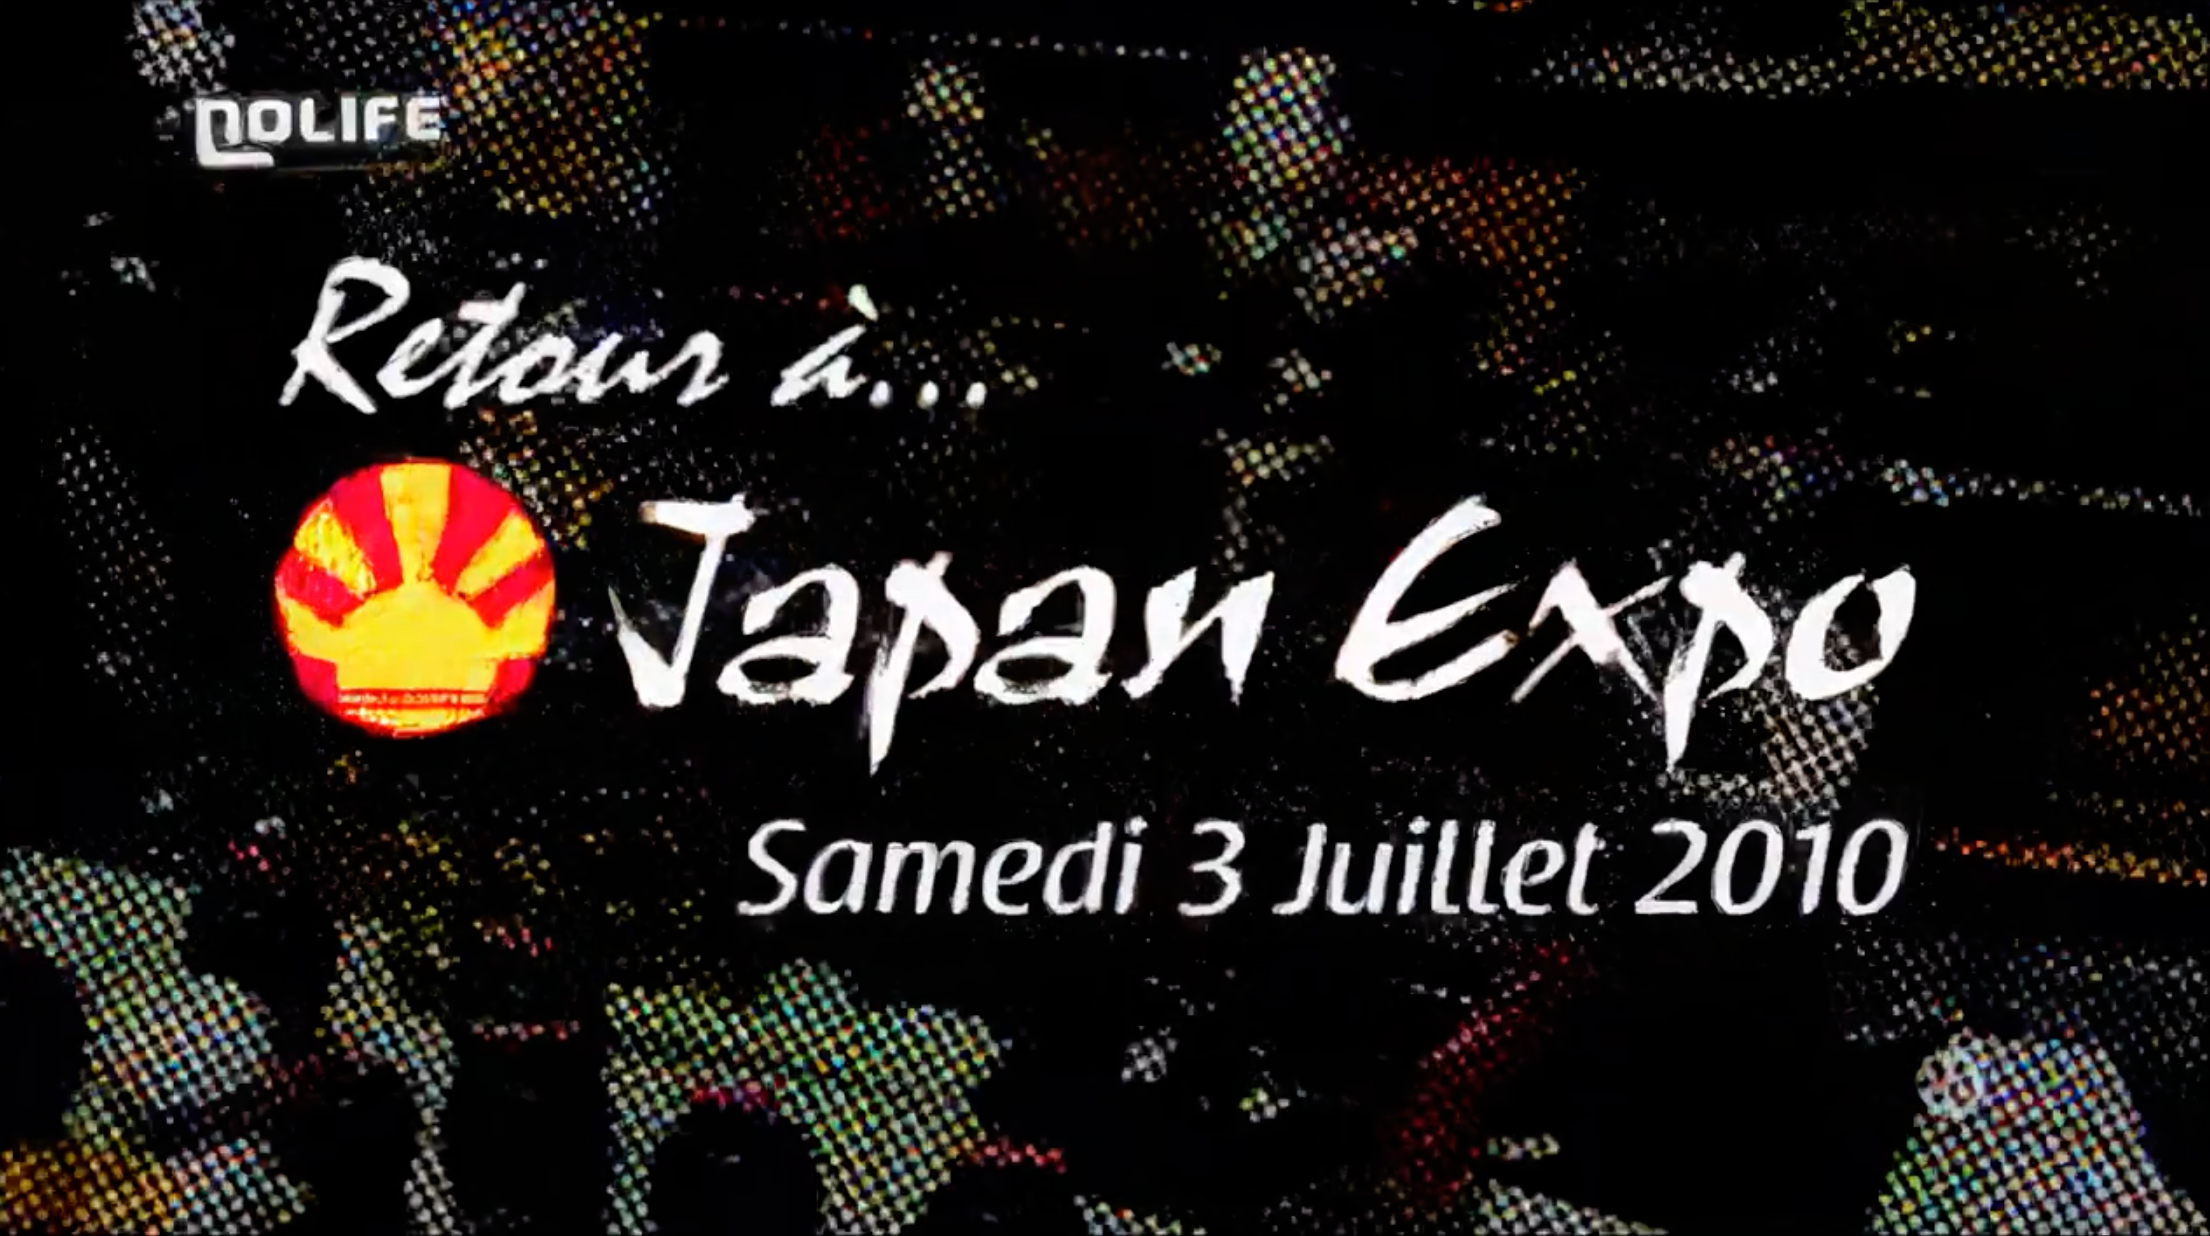 La Japan Expo qui annonçait la fin de la saison sur Nolife